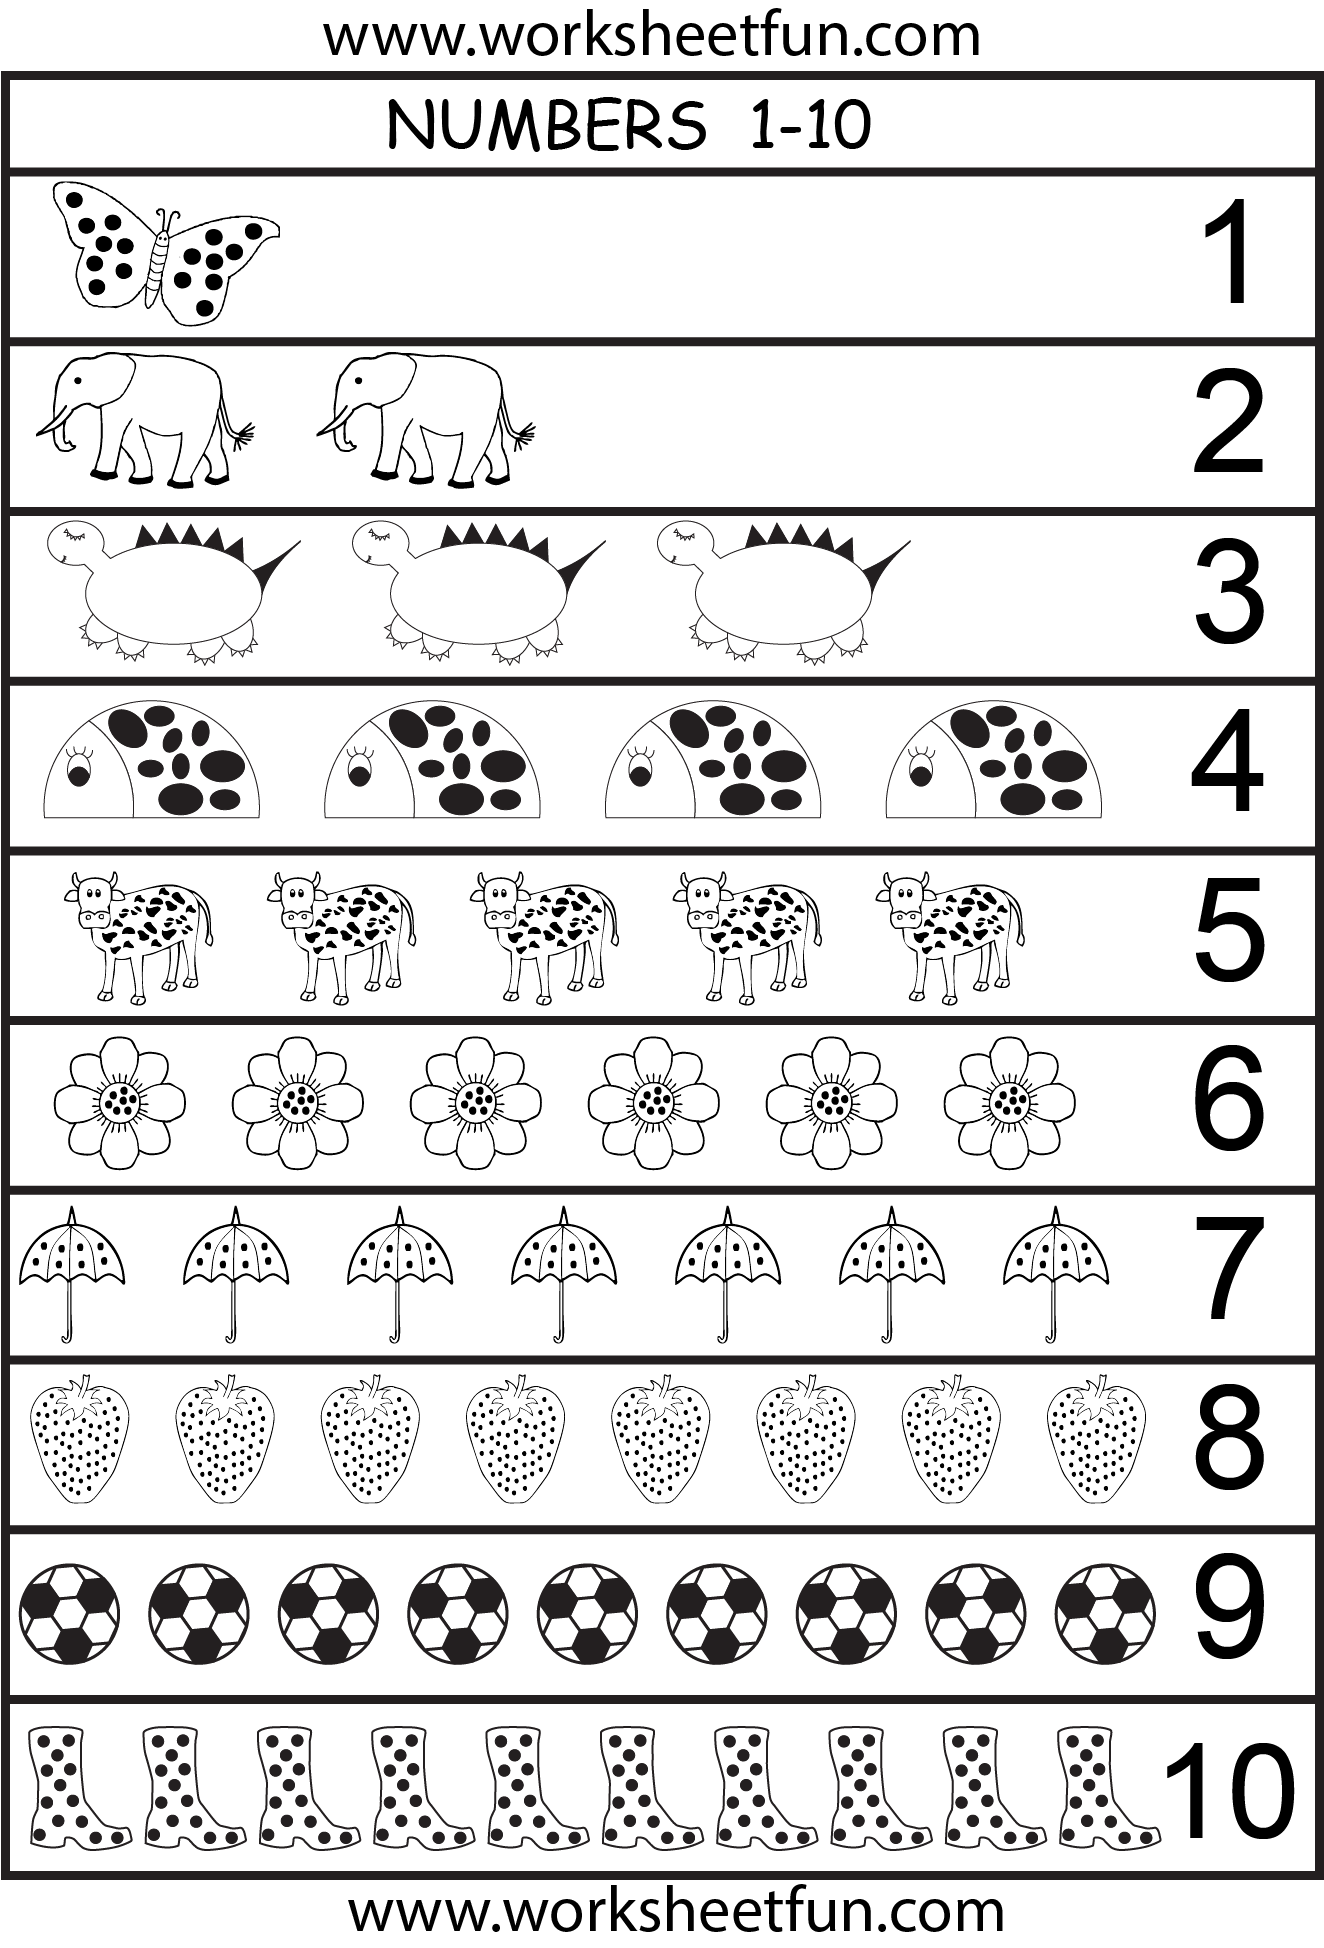 6-best-images-of-printable-number-chart-1-10-kindergarten-number-worksheets-1-10-number-words